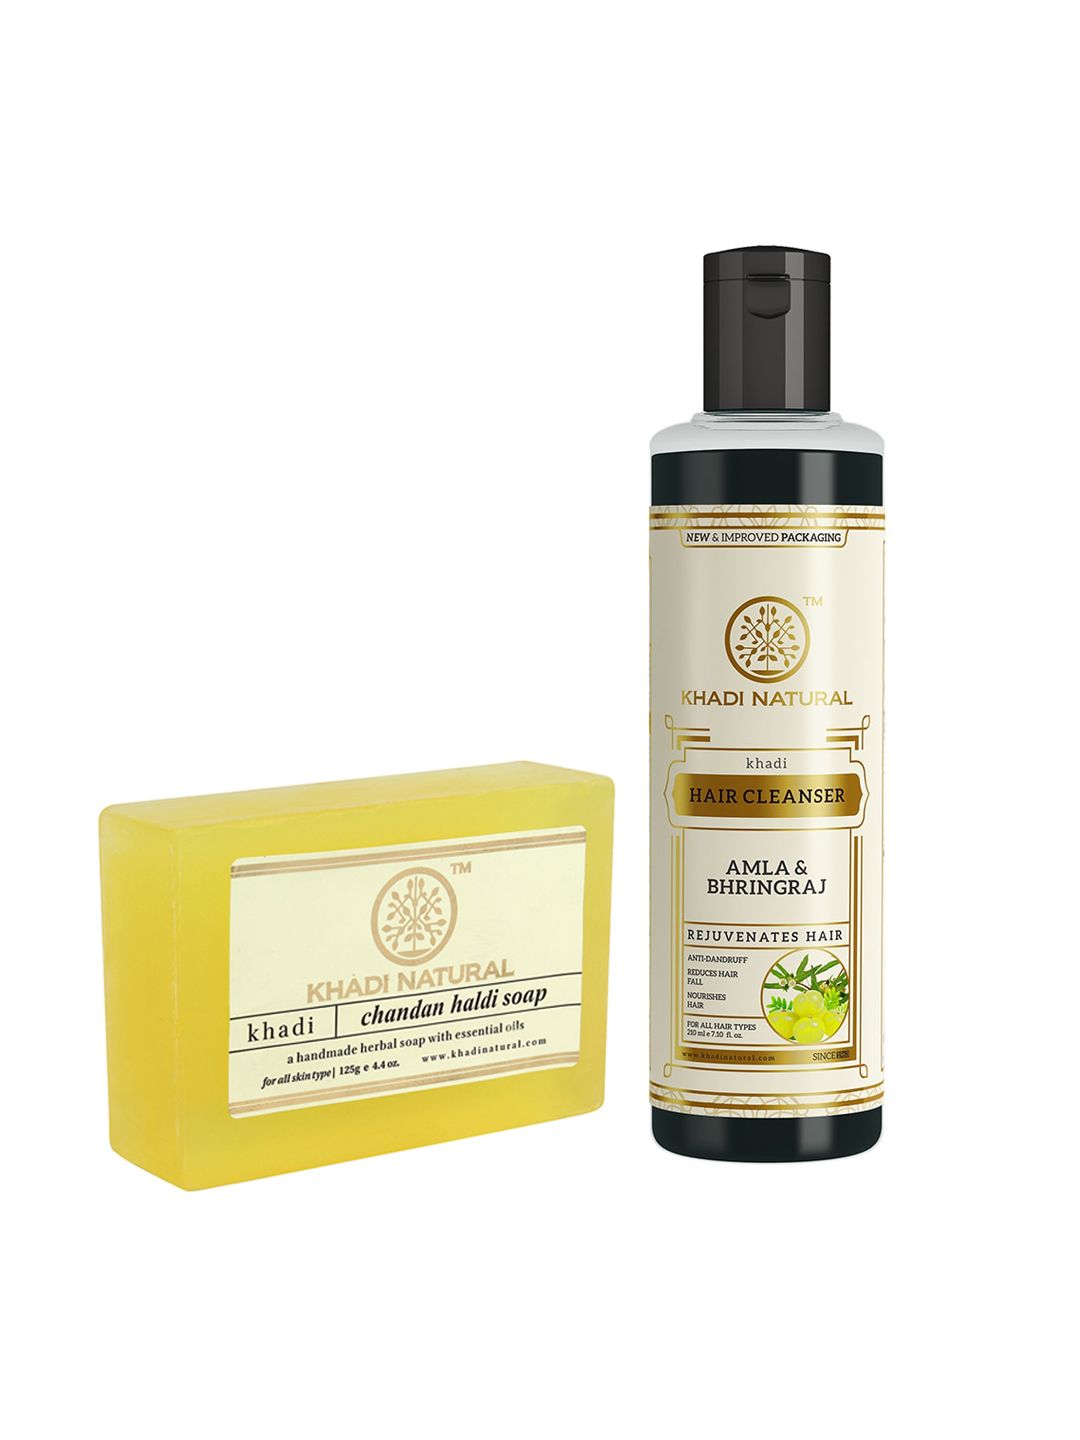 Khadi Natural Amla & Bhringraj Hair Cleanser & Chandan Haldi Soap Price in India